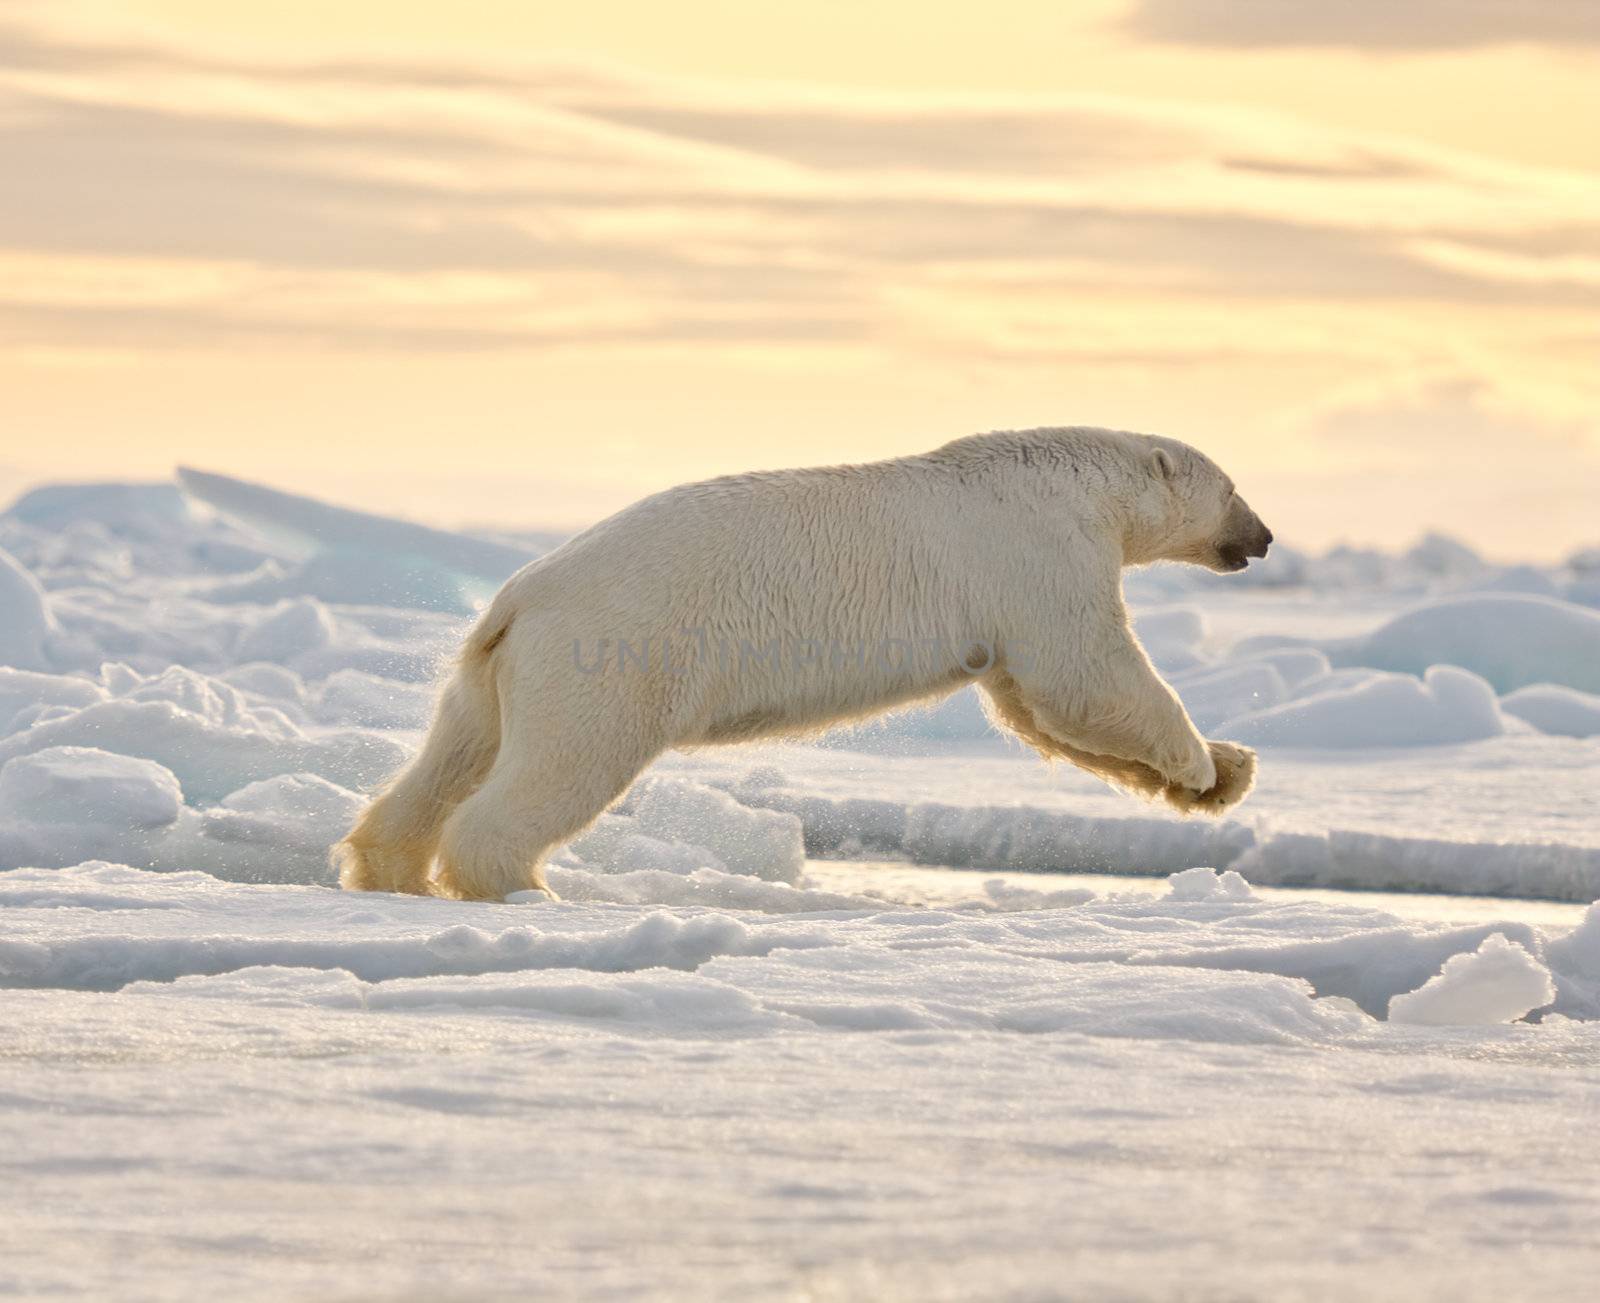 Polar bear leaping in the snow.  Horizontally framed shot.